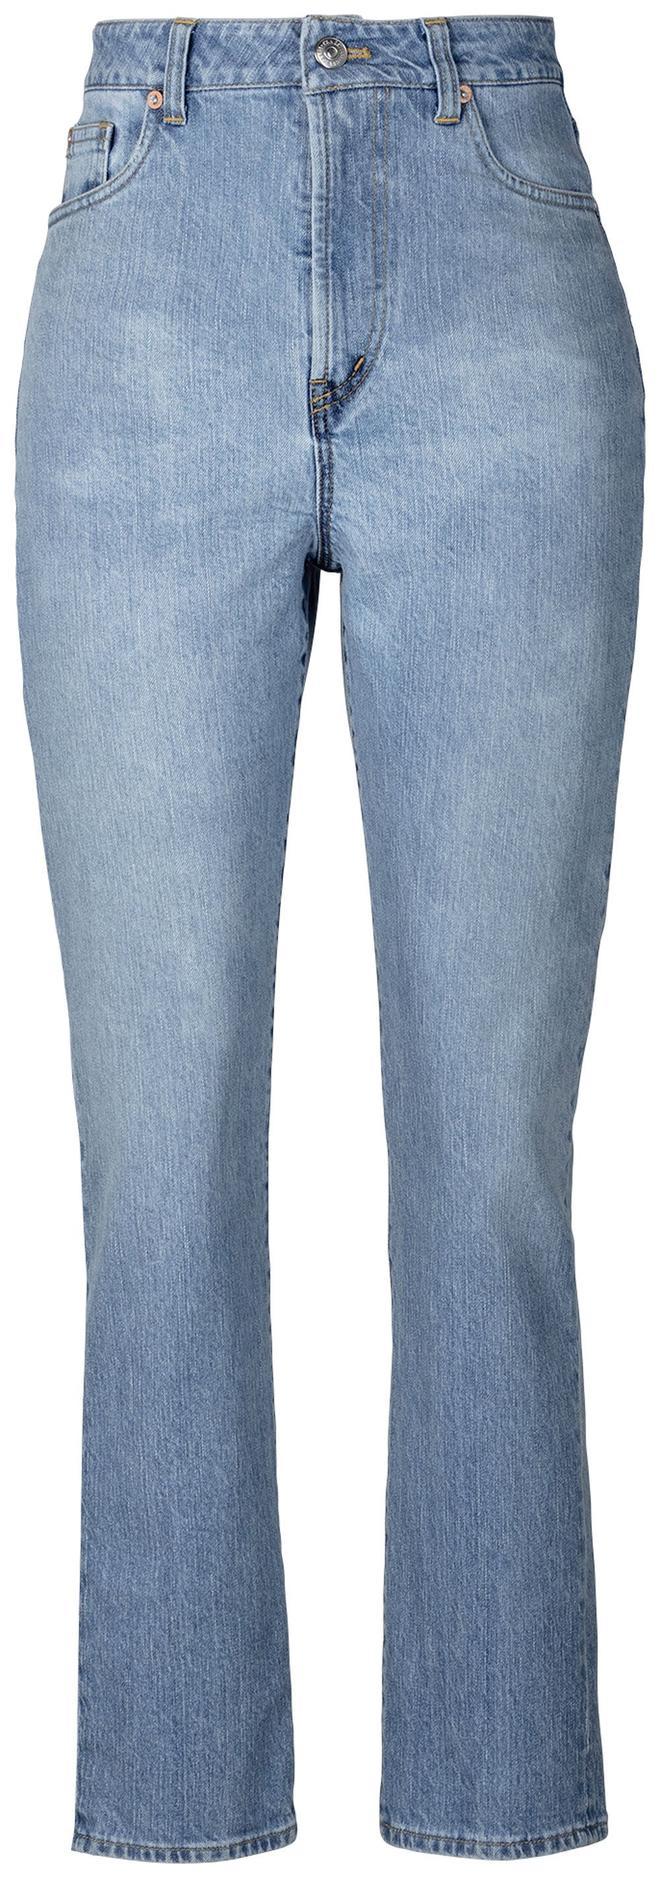 Jeans sostenibles de C&amp;A (precio: 59,99 euros)